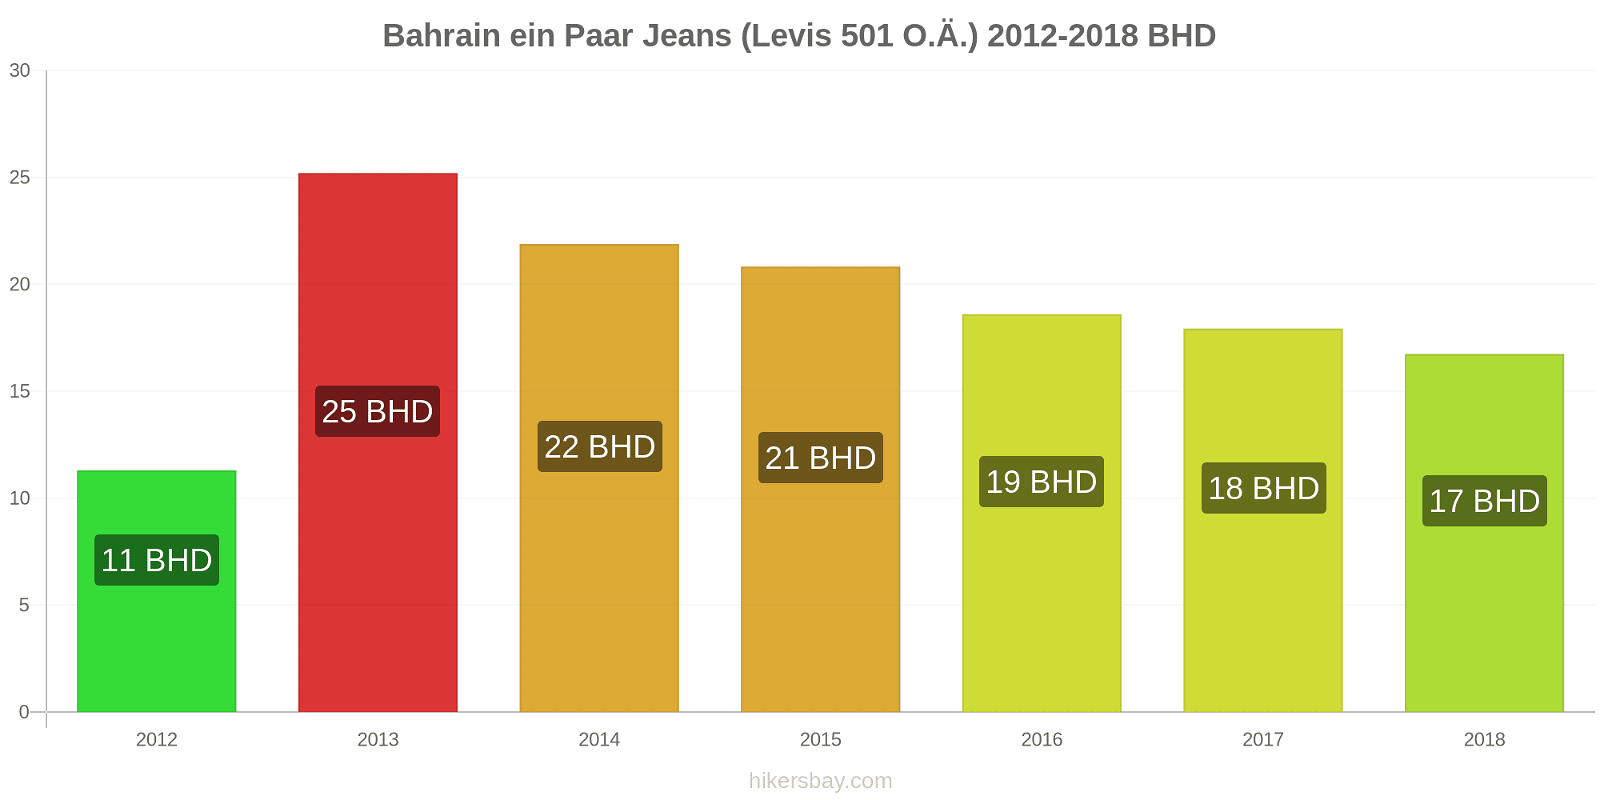 Bahrain Preisänderungen 1 Paar Jeans (Levis 501 oder ähnlich) hikersbay.com